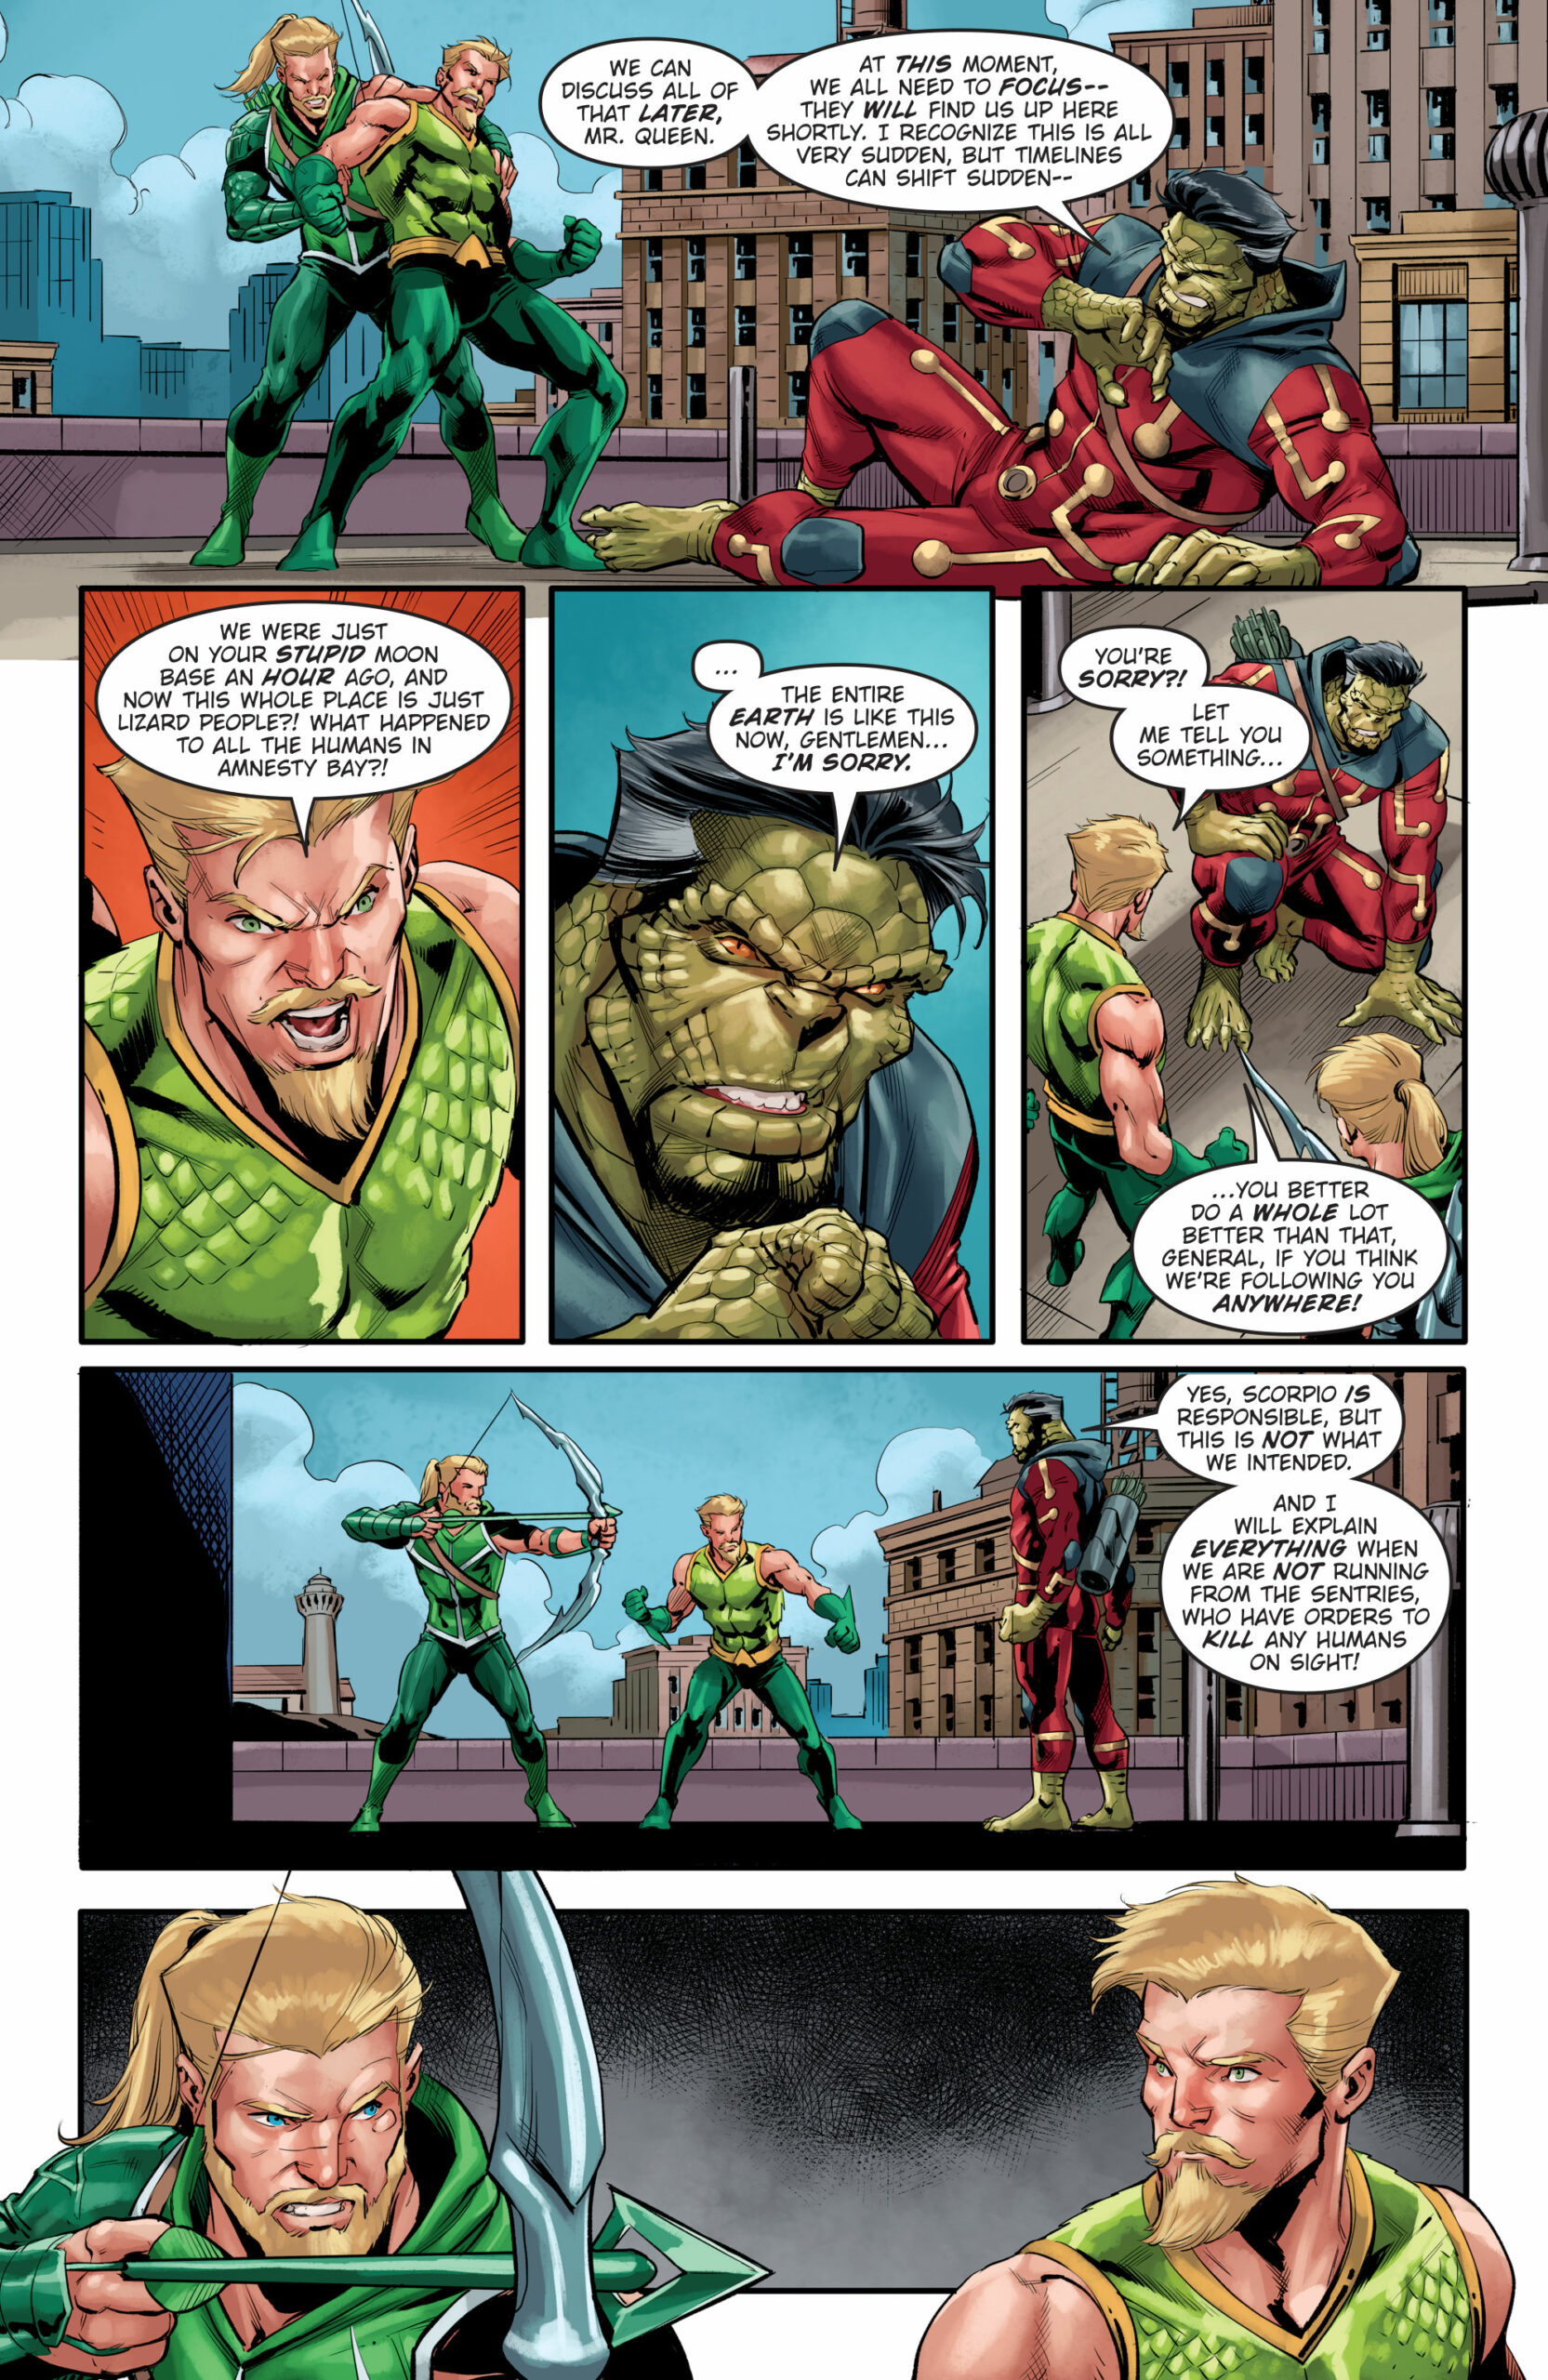 Weird Science DC Comics: Green Arrow #1 Review